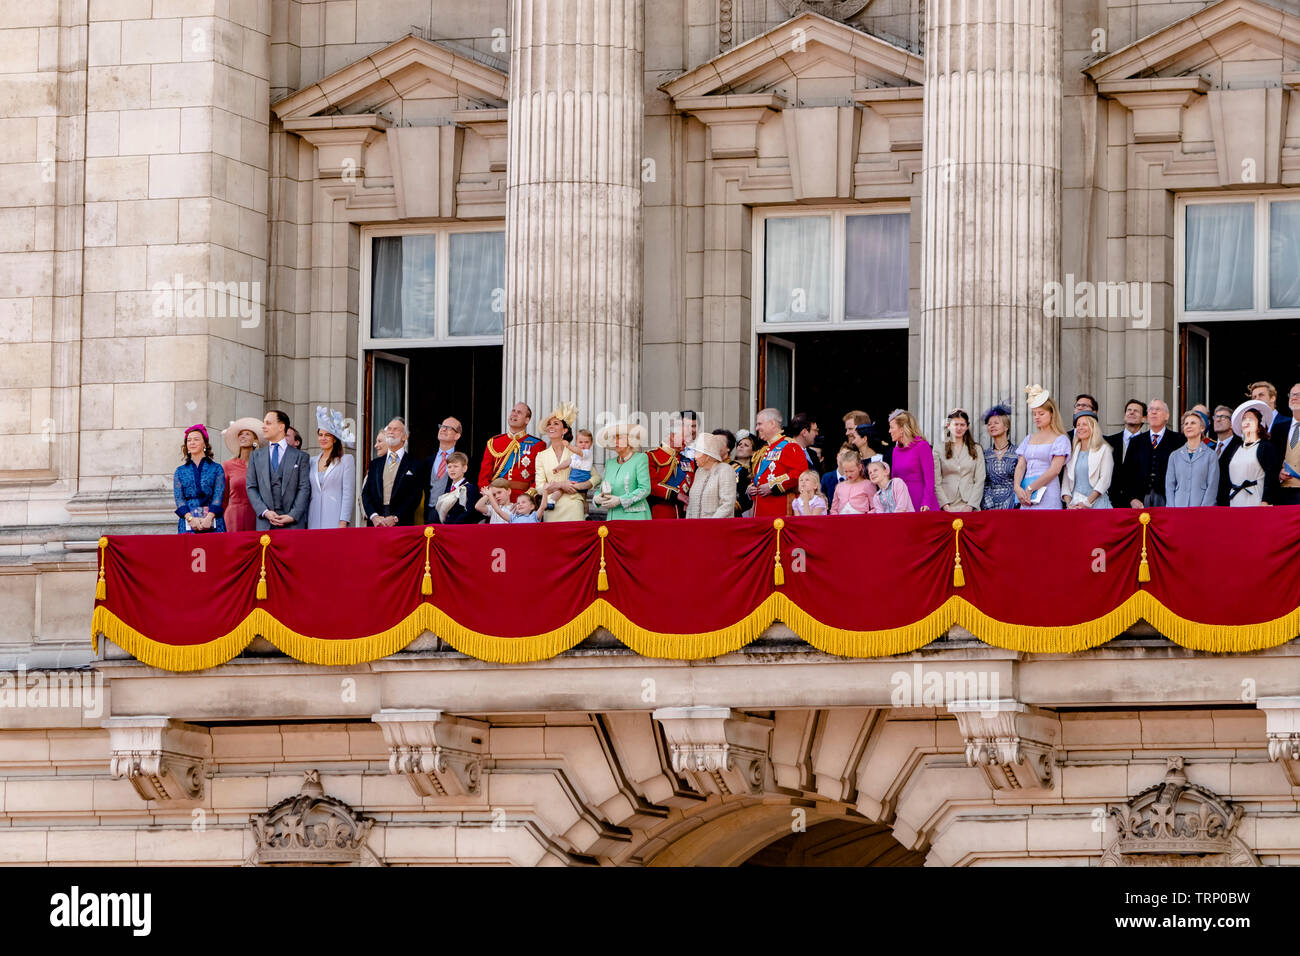 La Reine et les membres de la famille royale se réunissent sur le balcon de Buckingham Palace à la suite de la Trooping The Color Parade, Londres, Royaume-Uni, 2019 Banque D'Images